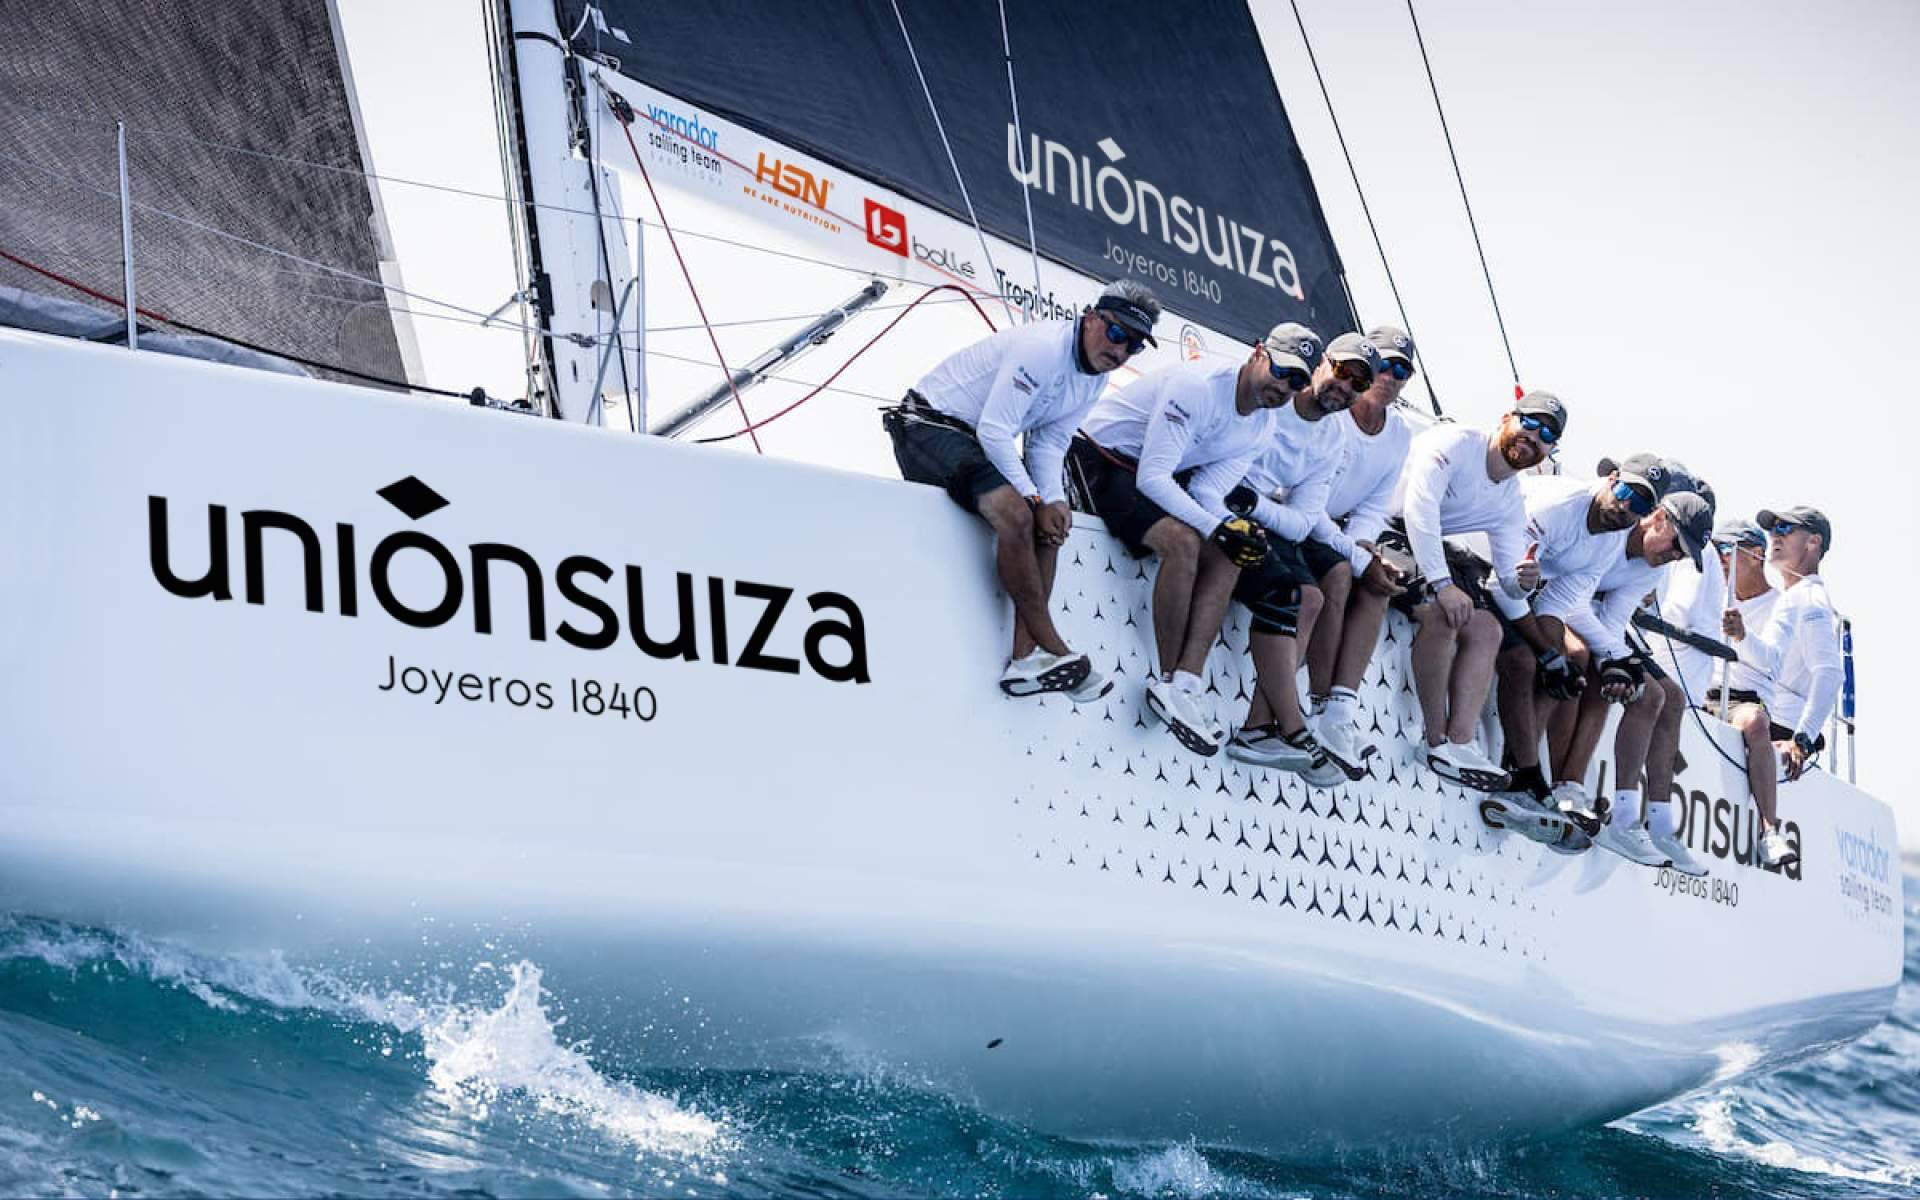  Unión Suiza se suma a la élite náutica y patrocina al Varador Sailing Team en la Copa del Rey de vela 